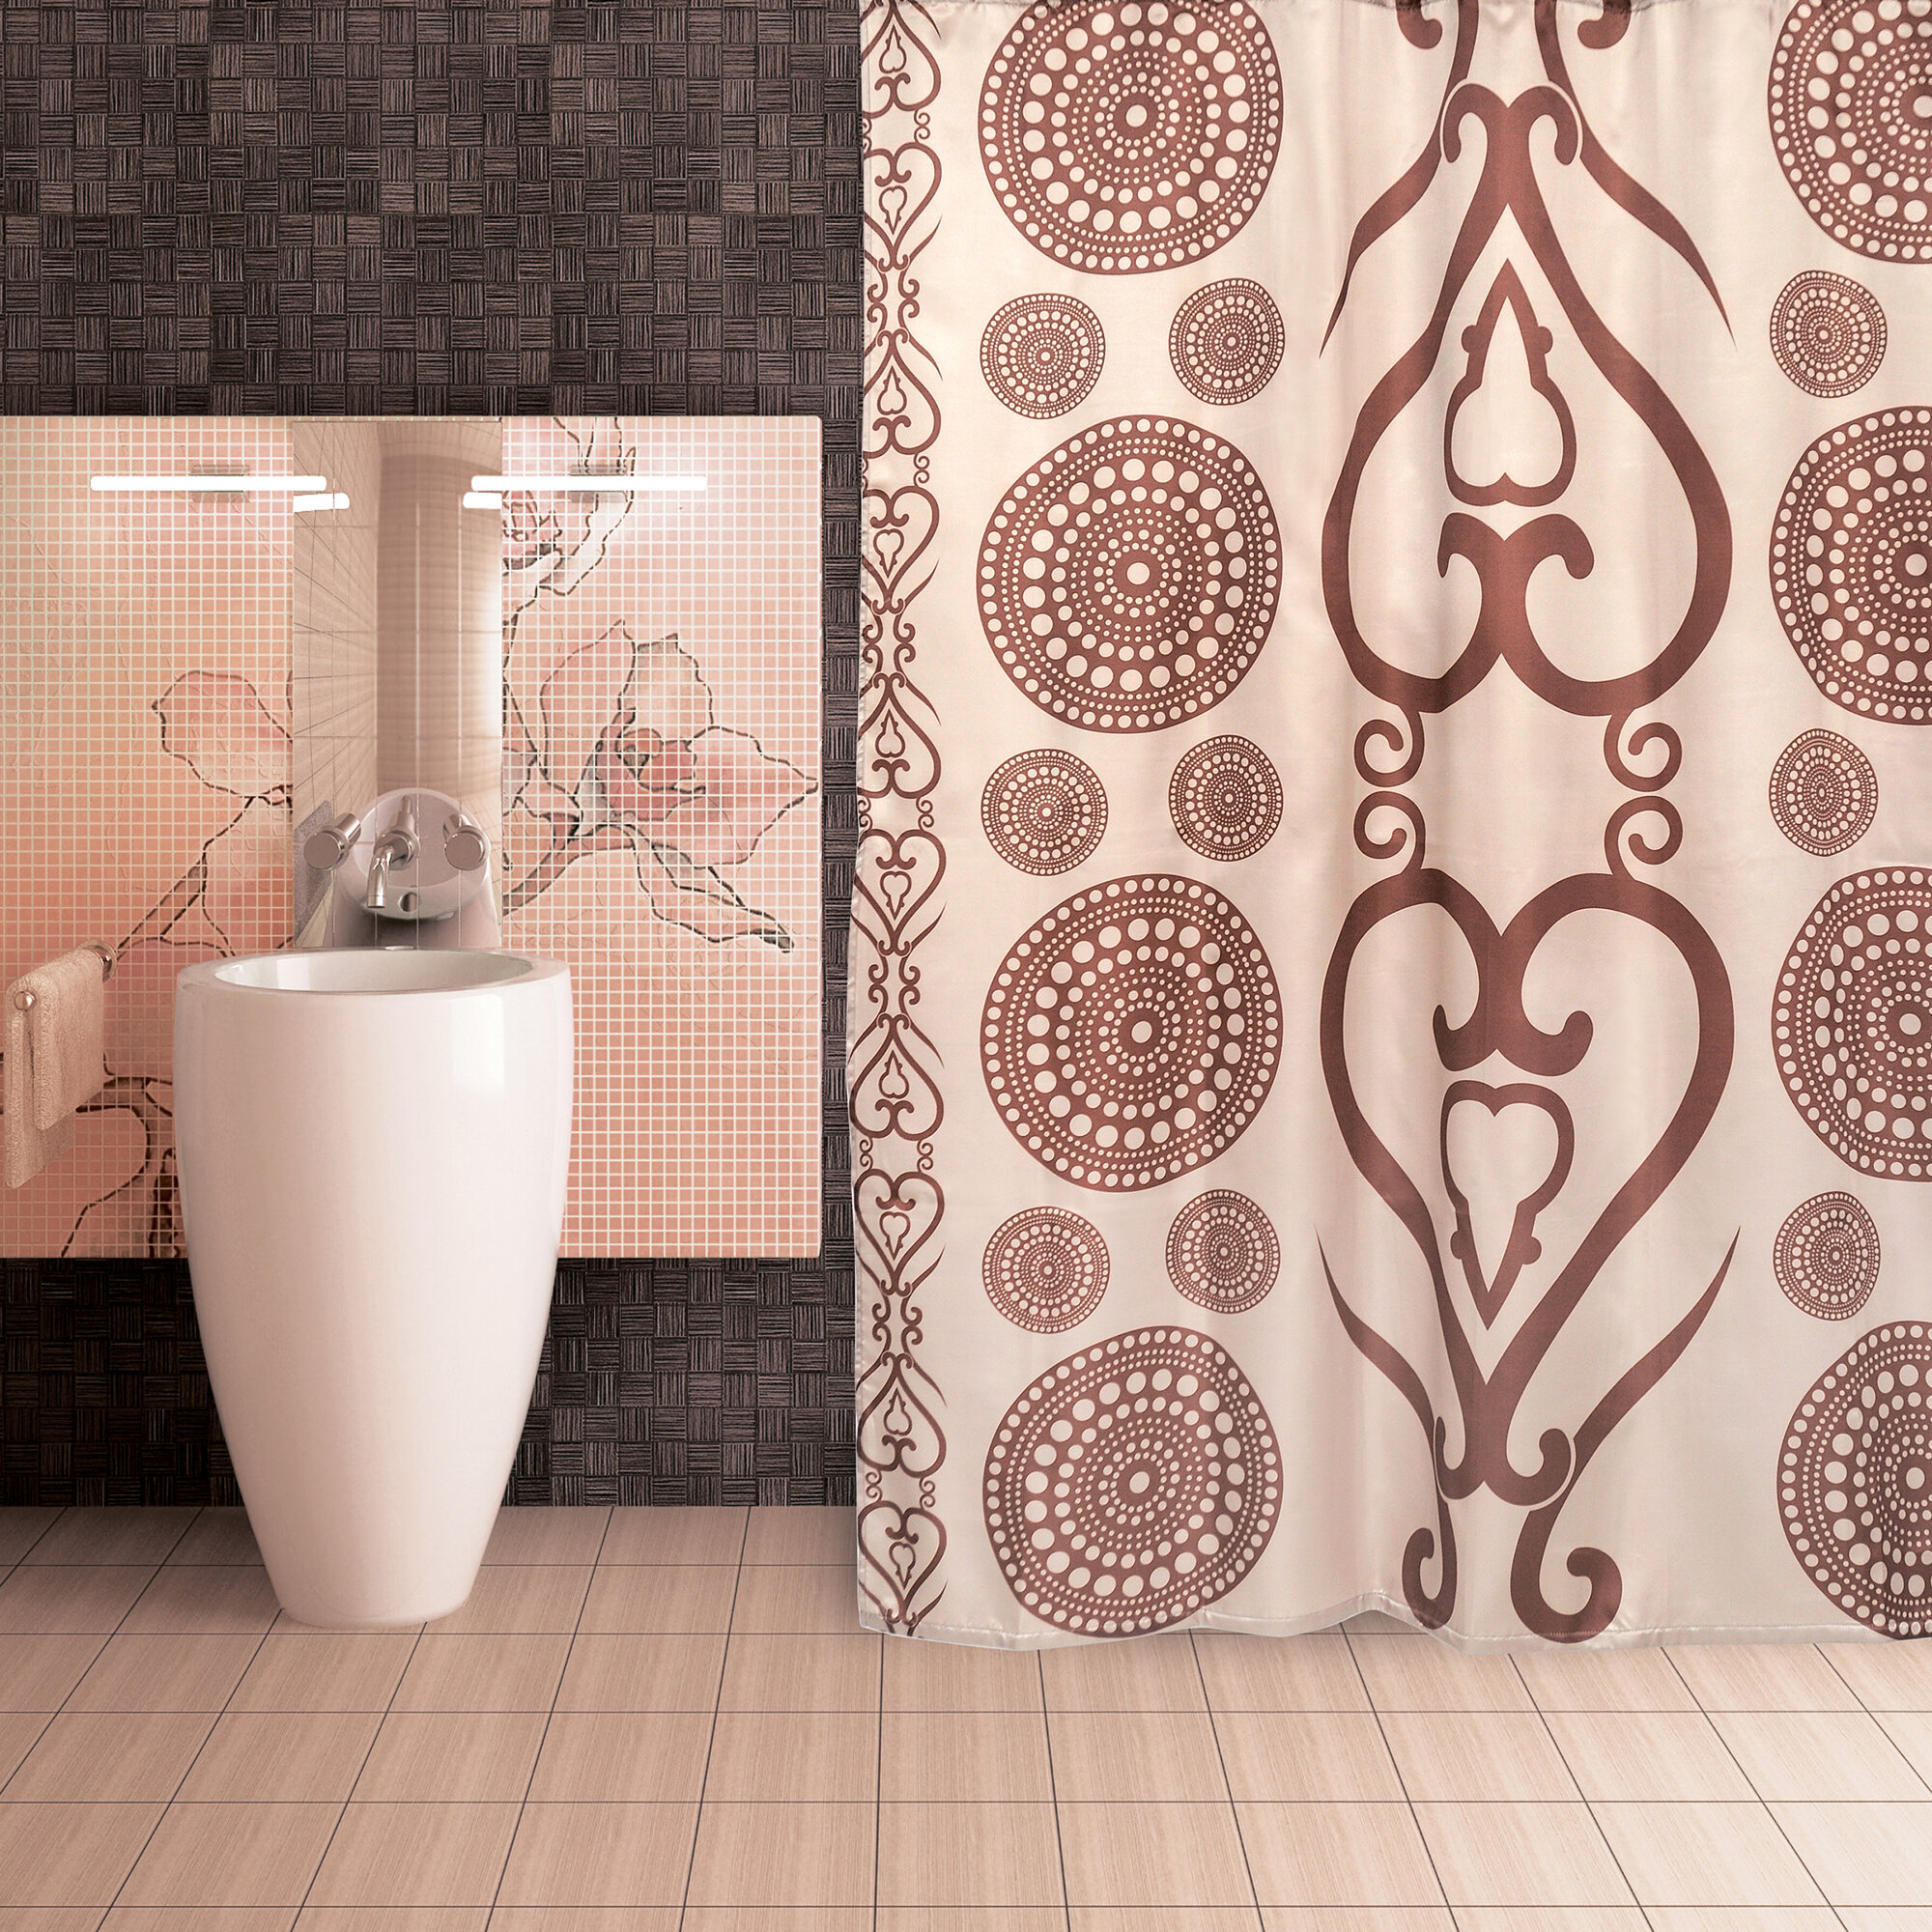 Занавеска (штора) Zelidzh для ванной комнаты тканевая 180х200 см, цвет коричневый бежевый